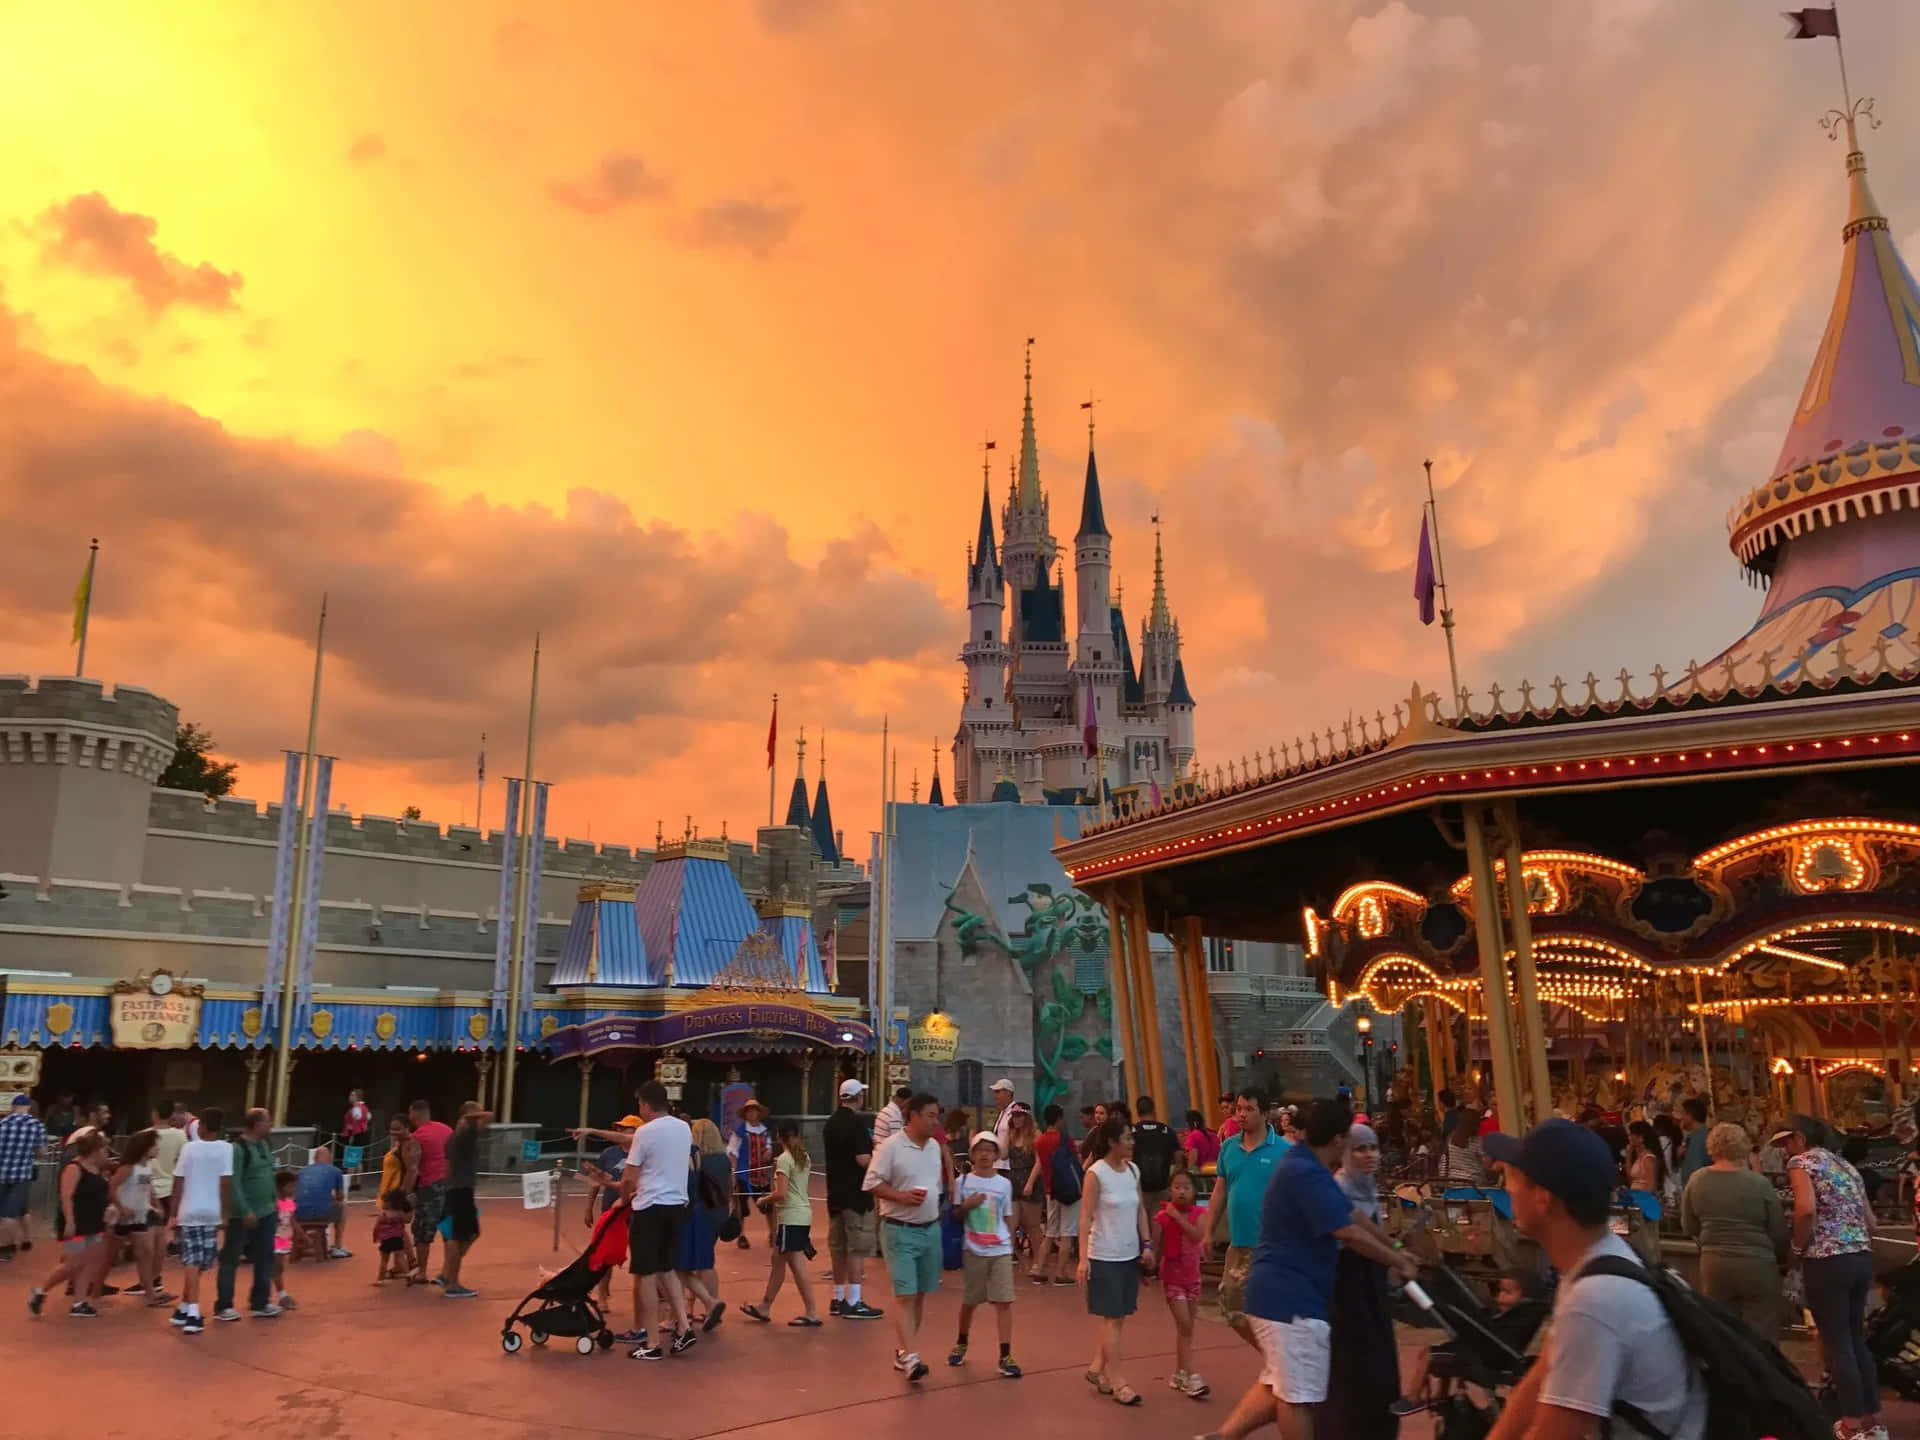 Experience Magic and Wonder at Disney World